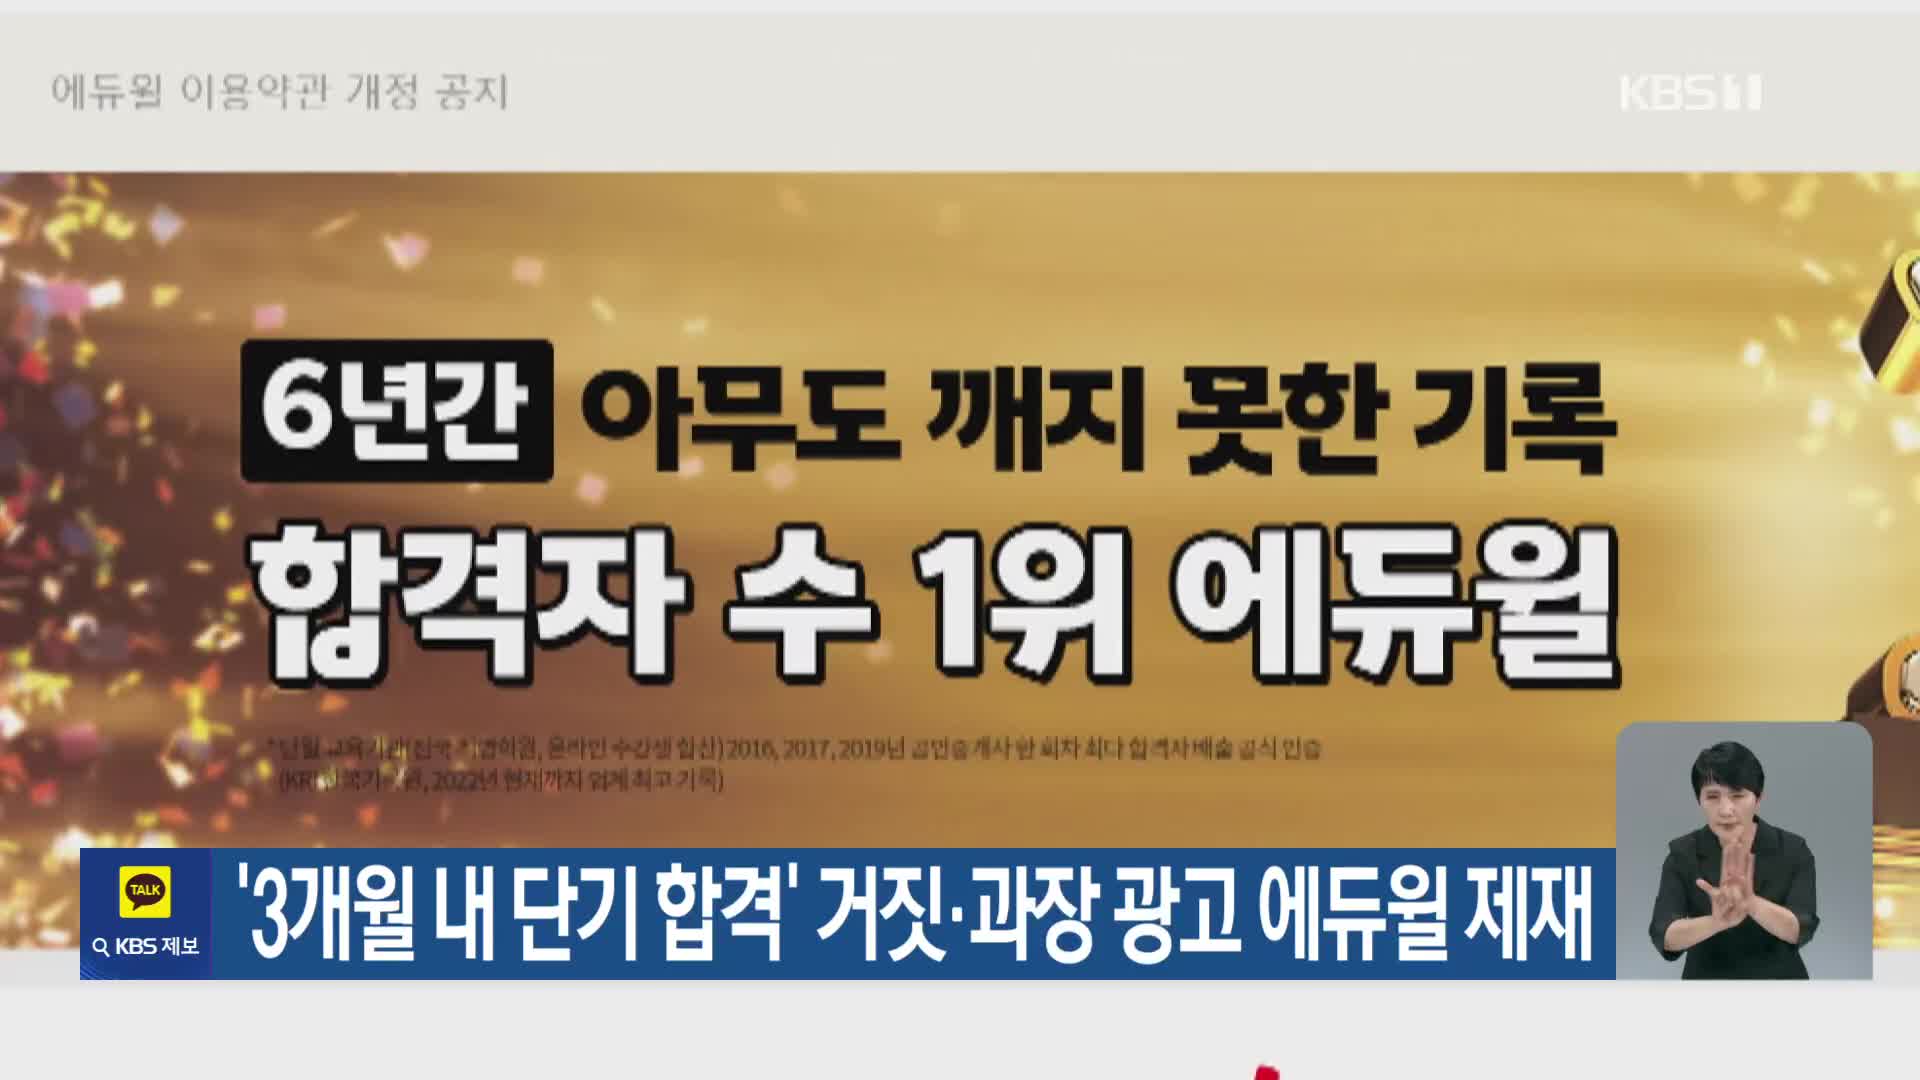 ‘3개월 내 단기 합격’ 거짓·과장 광고 에듀윌 제재